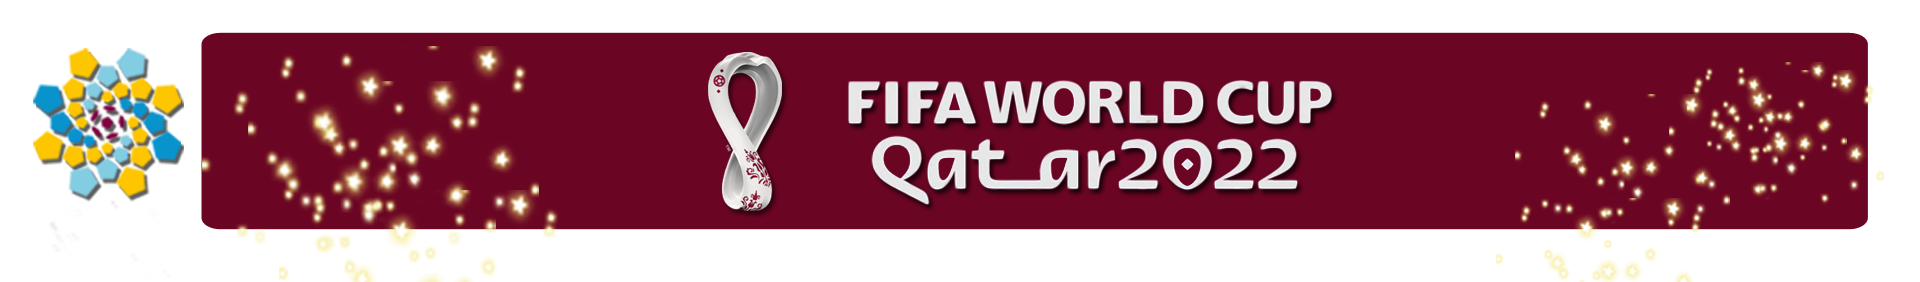 Nhận định bóng đá Việt Nam - UAE: Hừng hực khí thế tái lập siêu kỳ tích 2007 (Vòng loại World Cup) - 3